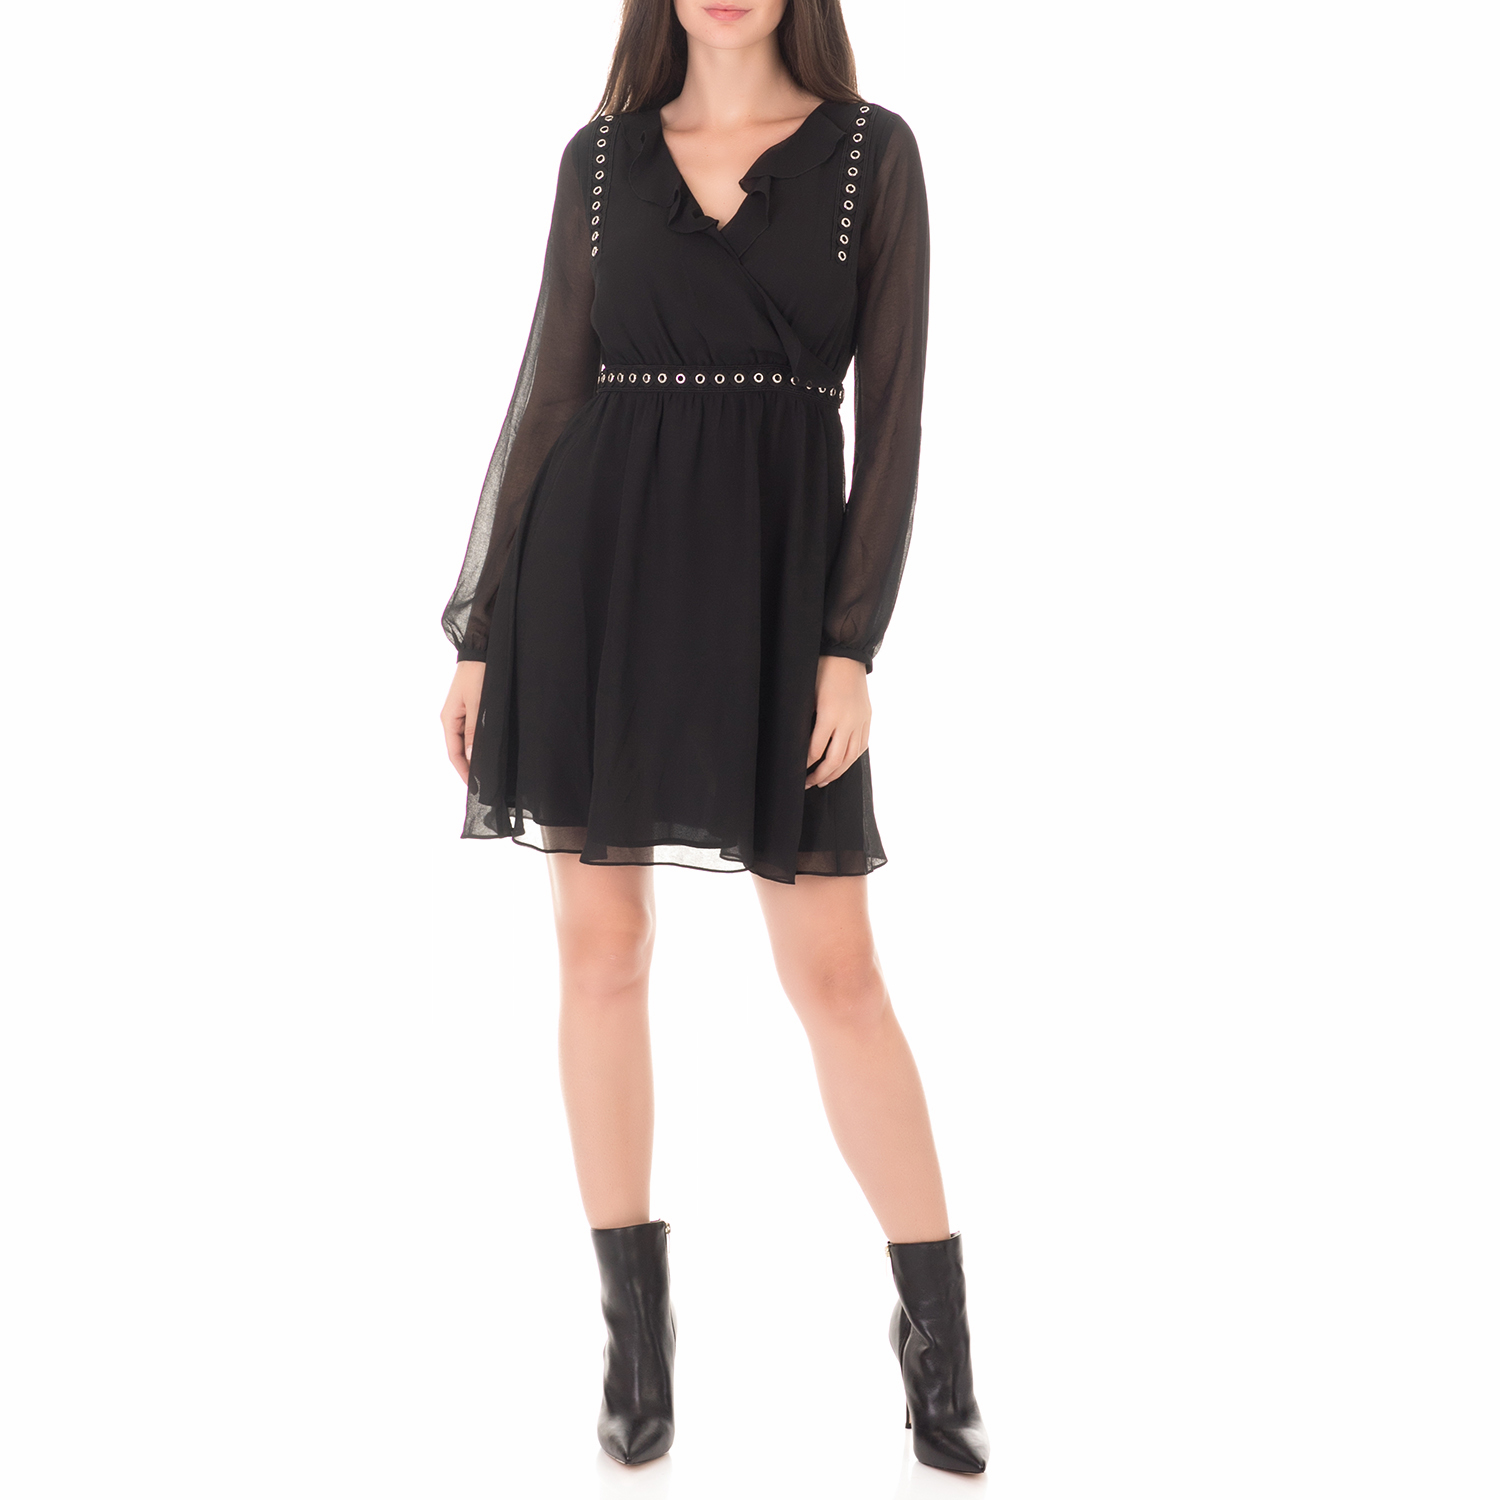 Γυναικεία/Ρούχα/Φορέματα/Μίνι GUESS - Γυναικείο μίνι φόρεμα GUESS XENIA μαύρο